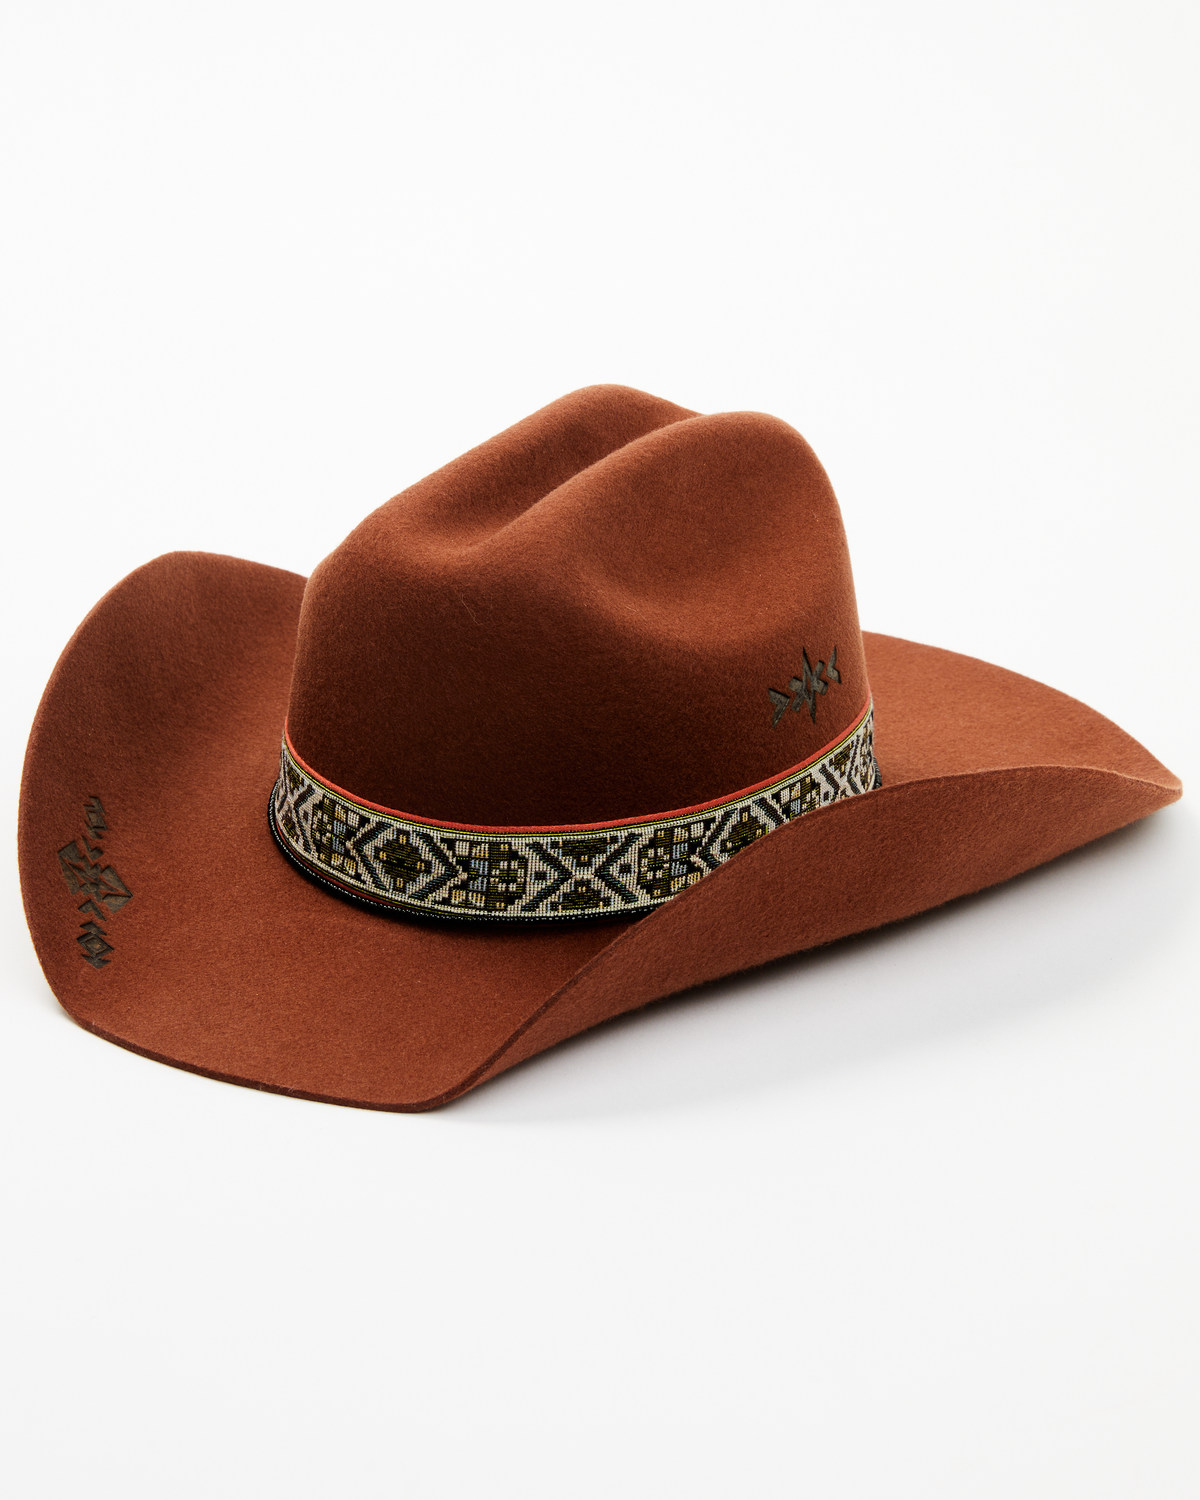 Idyllwind Women's Saville Felt Cowboy Hat